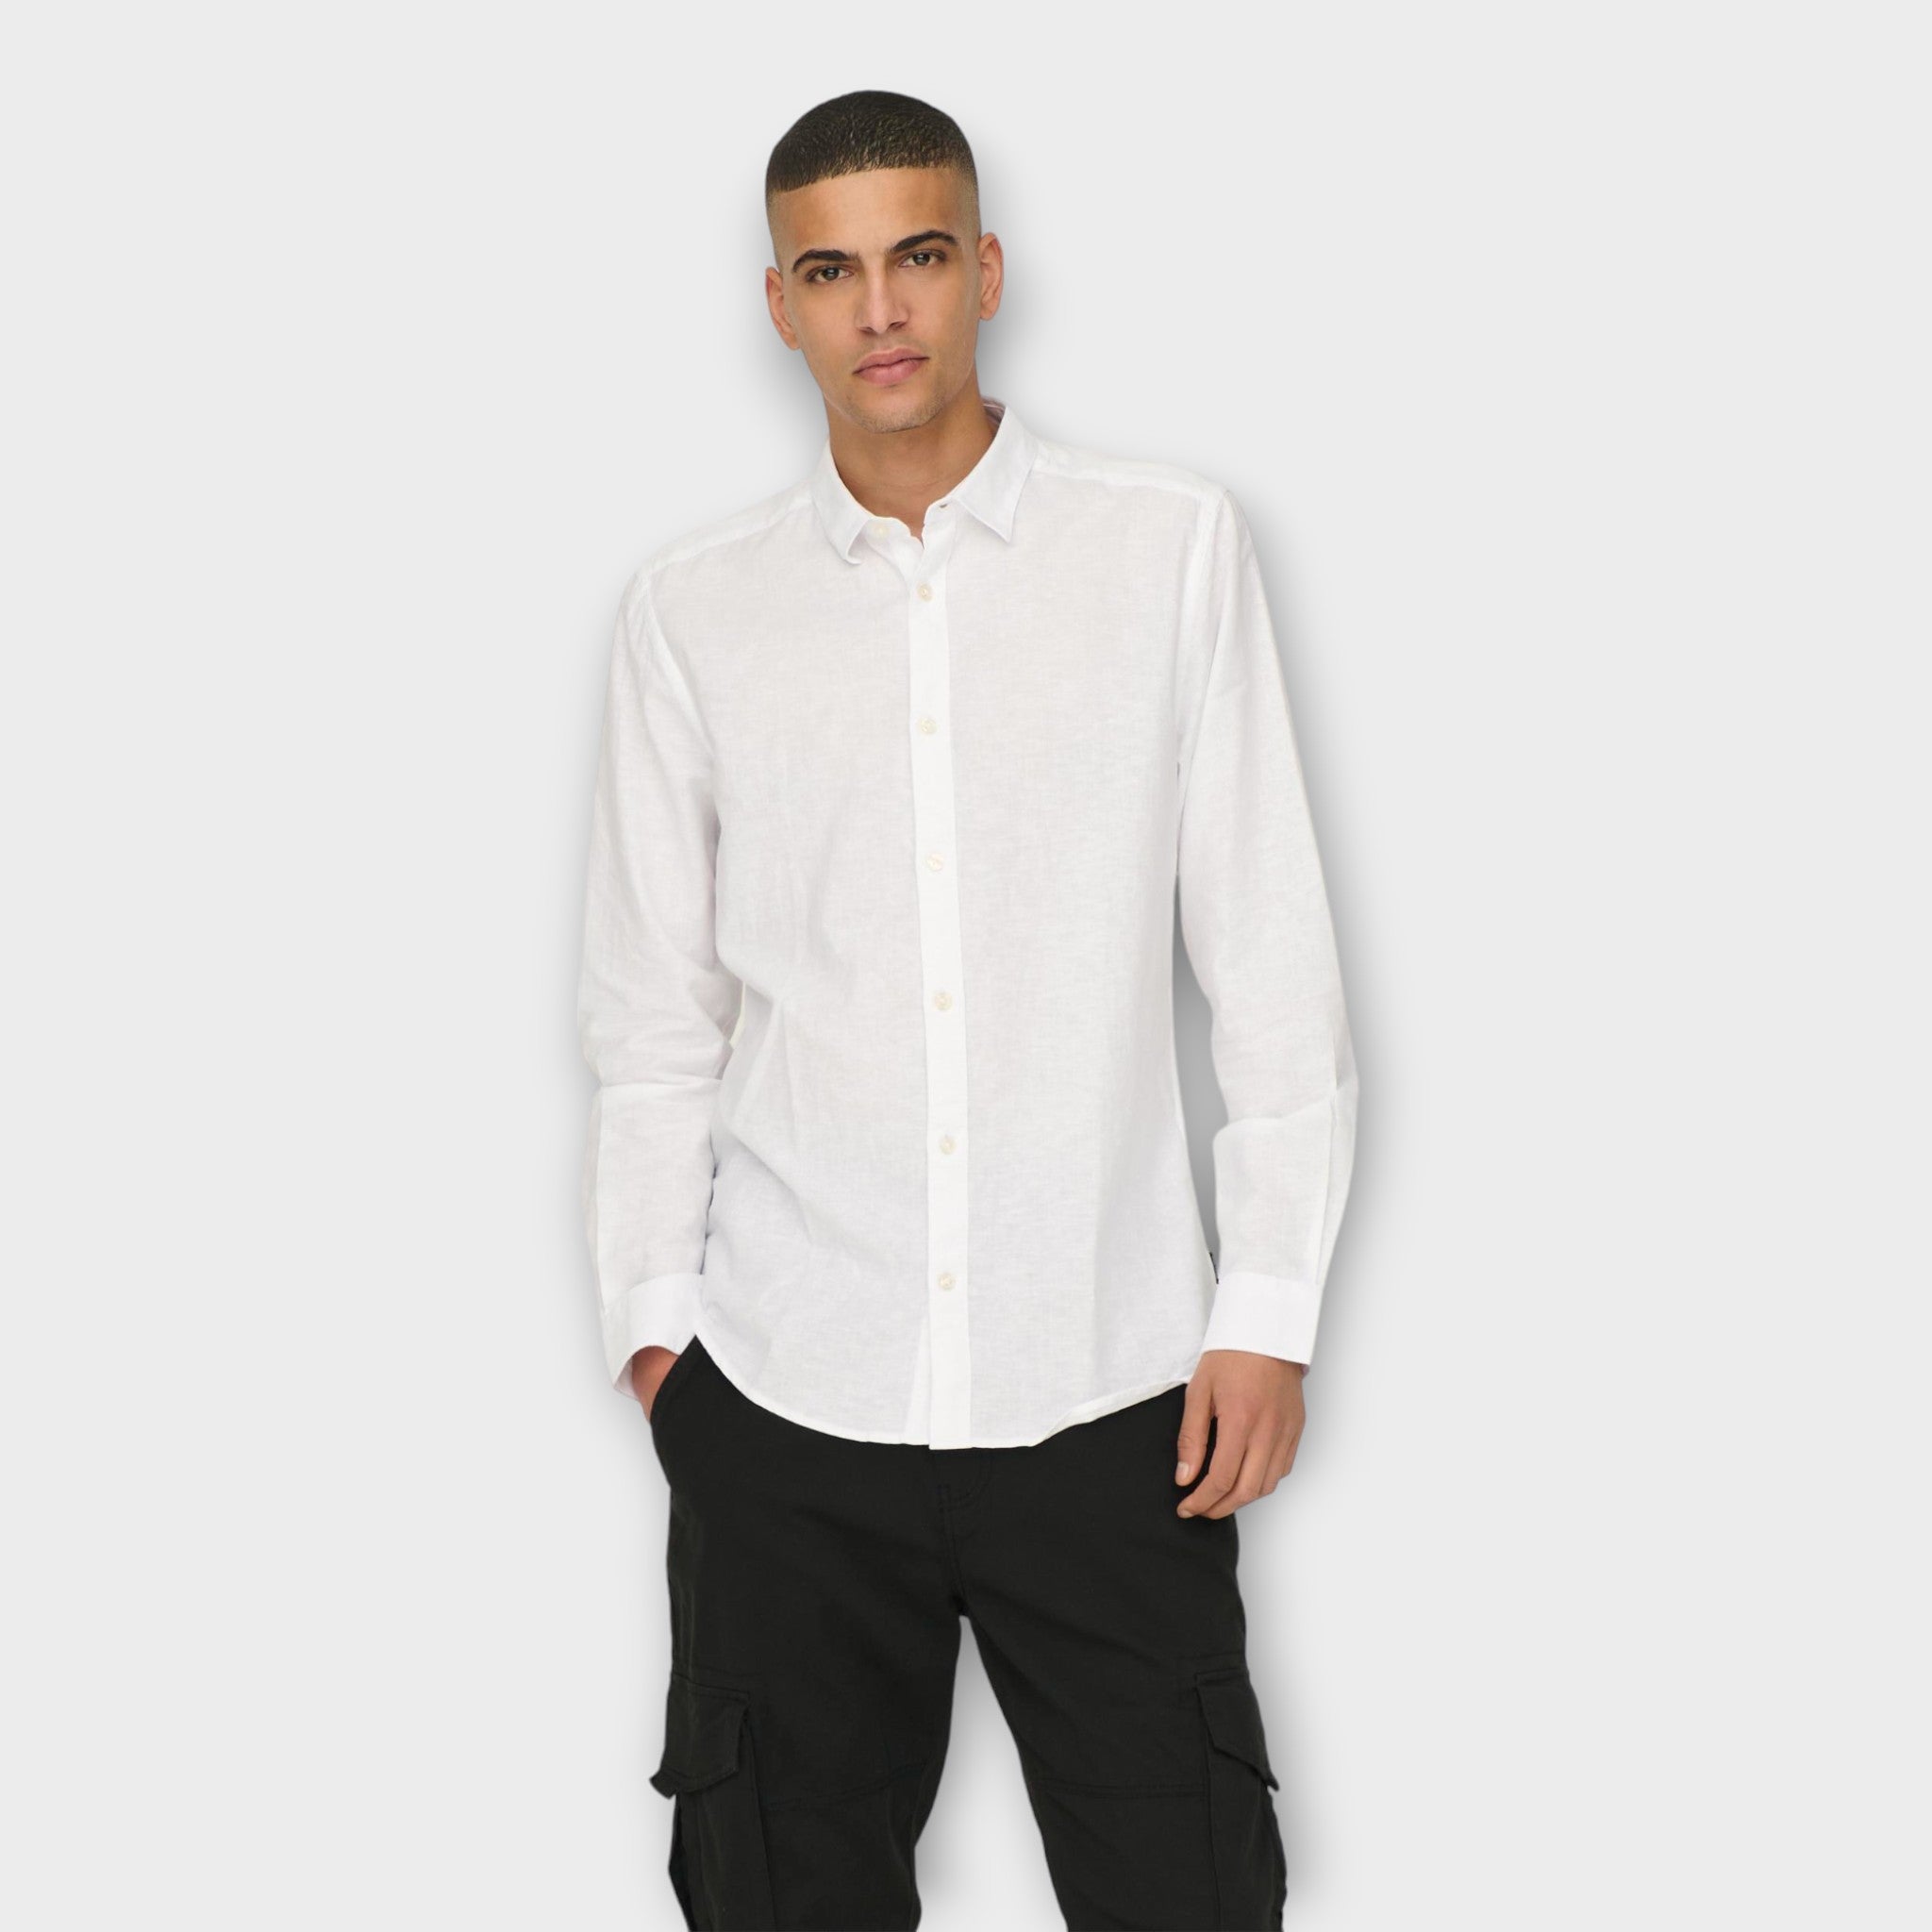 Caiden  LS Solid Linen Shirt  White, Only and Sons hvid langærmet hørskjorte til herre. Her set på model i closeup.